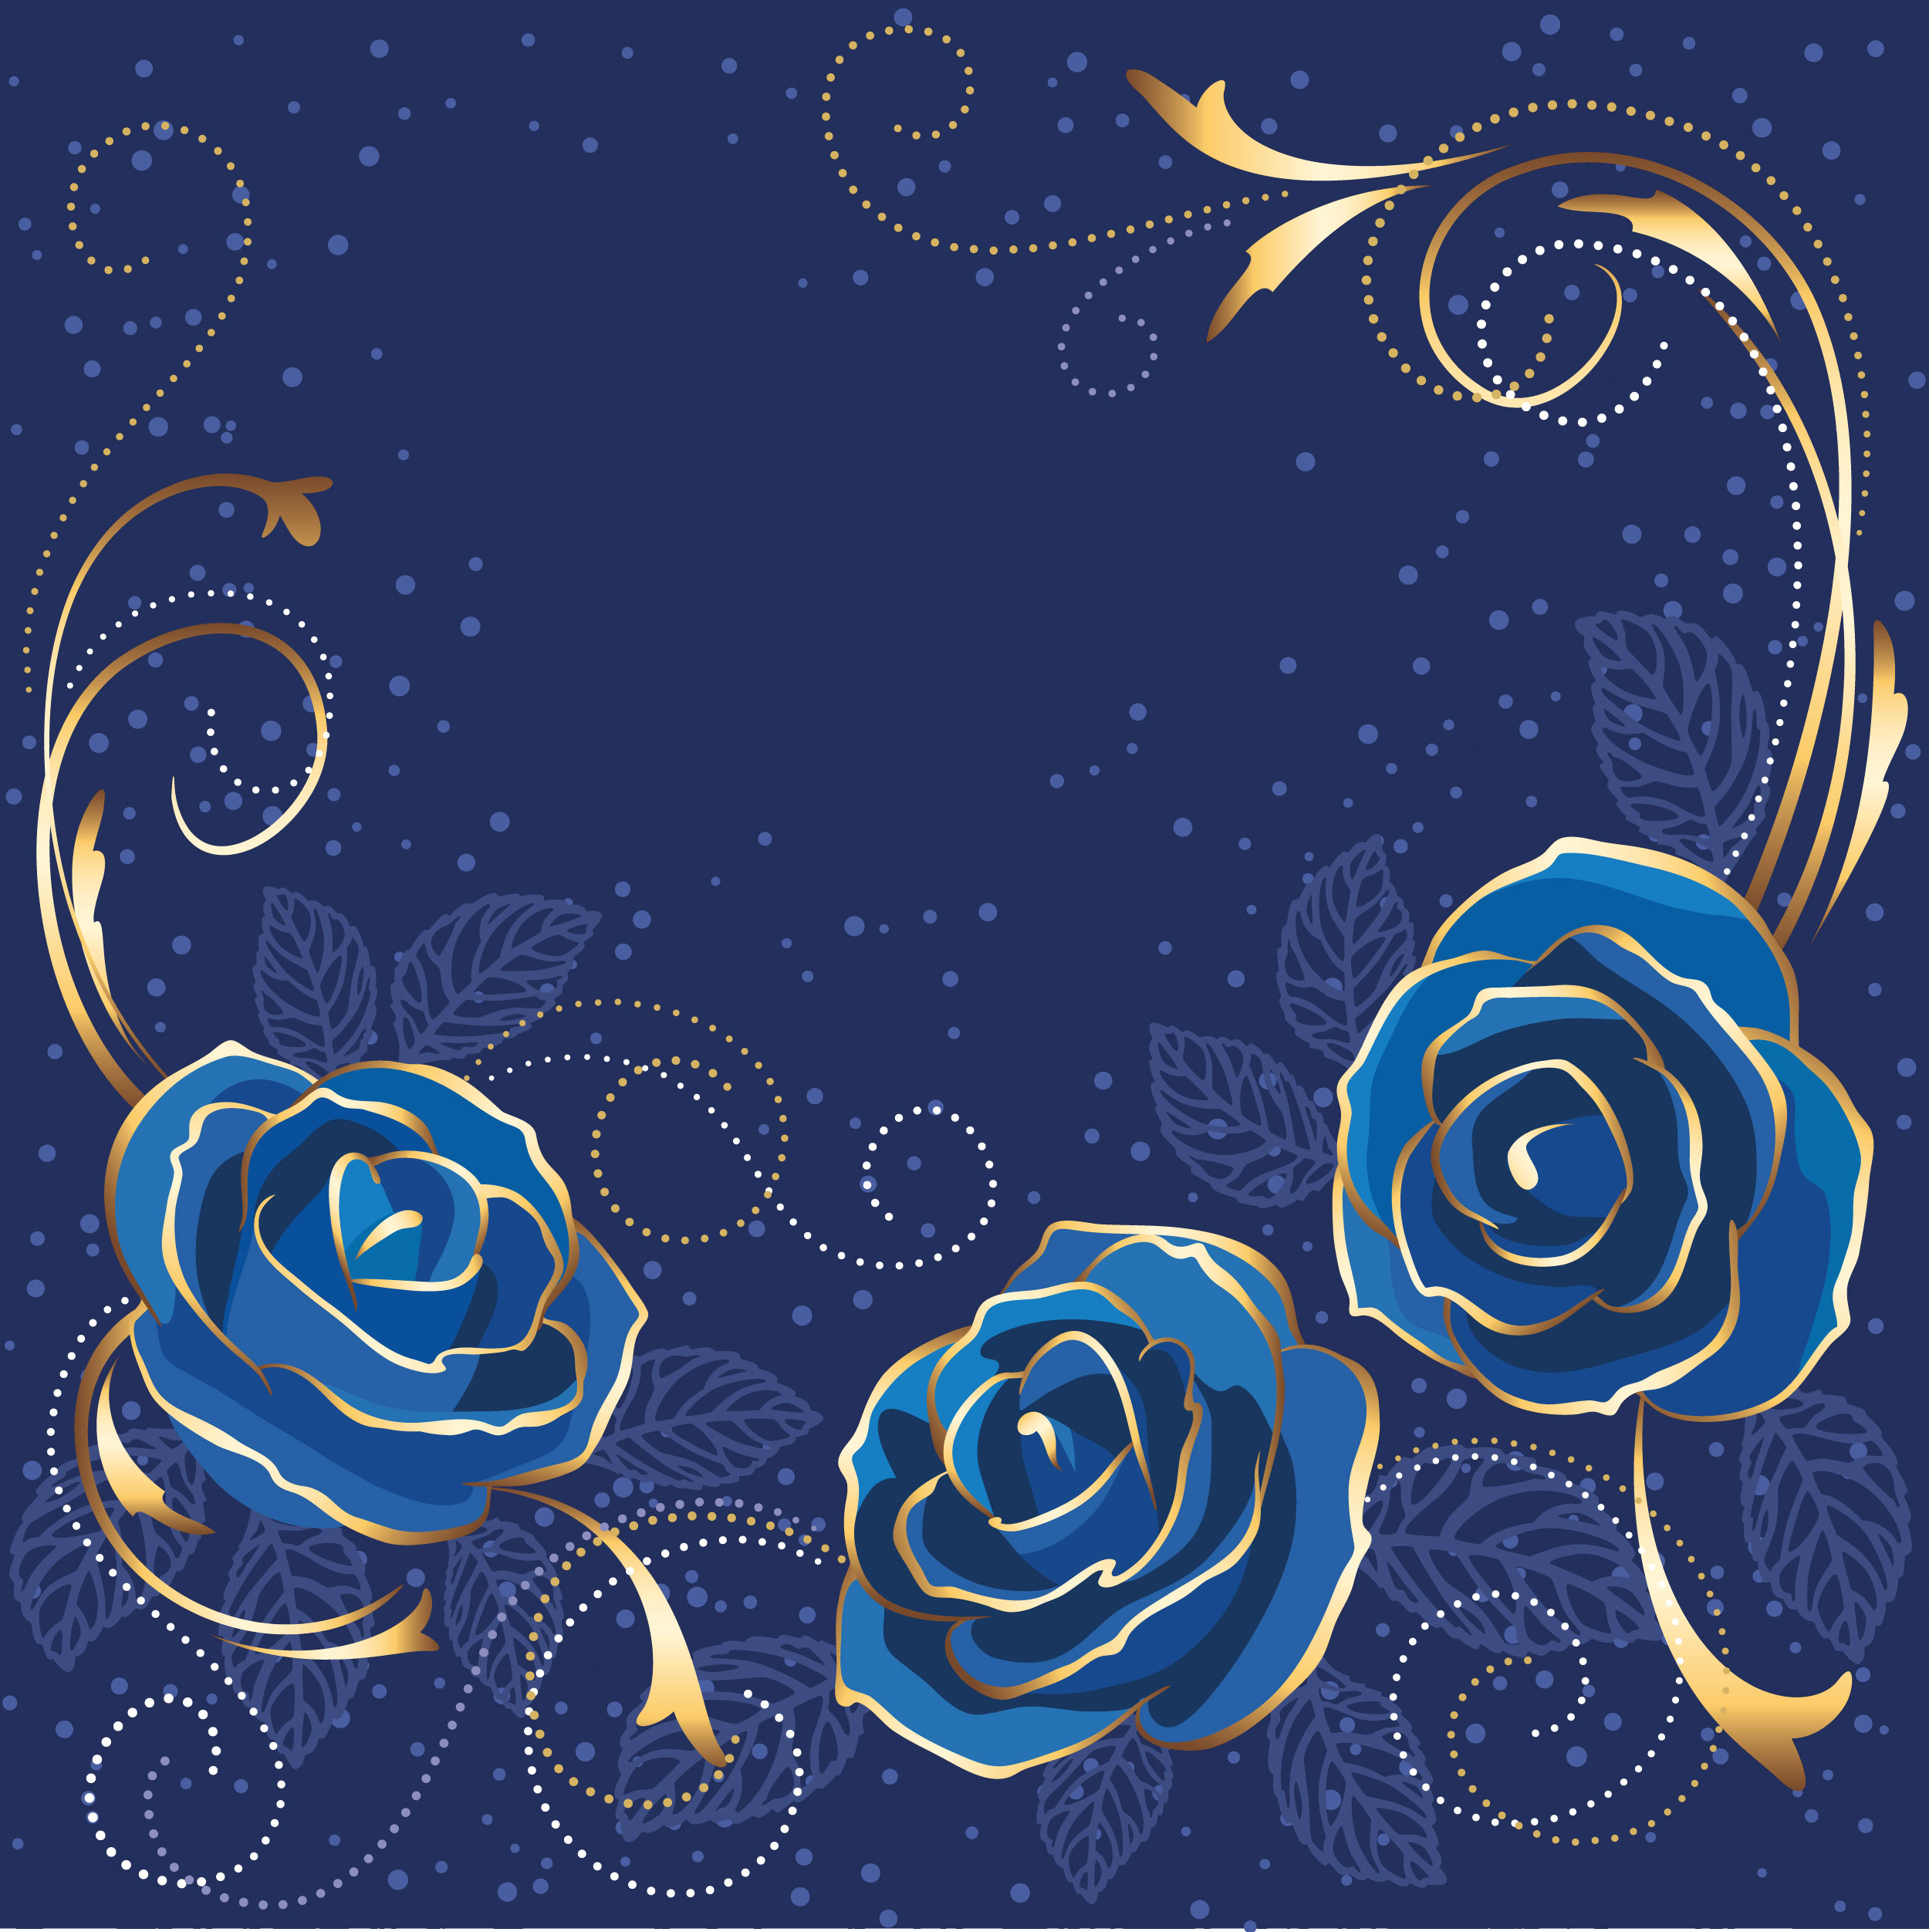 バラの画像 イラスト 壁紙 背景用 No 675 青いバラ 金色の葉